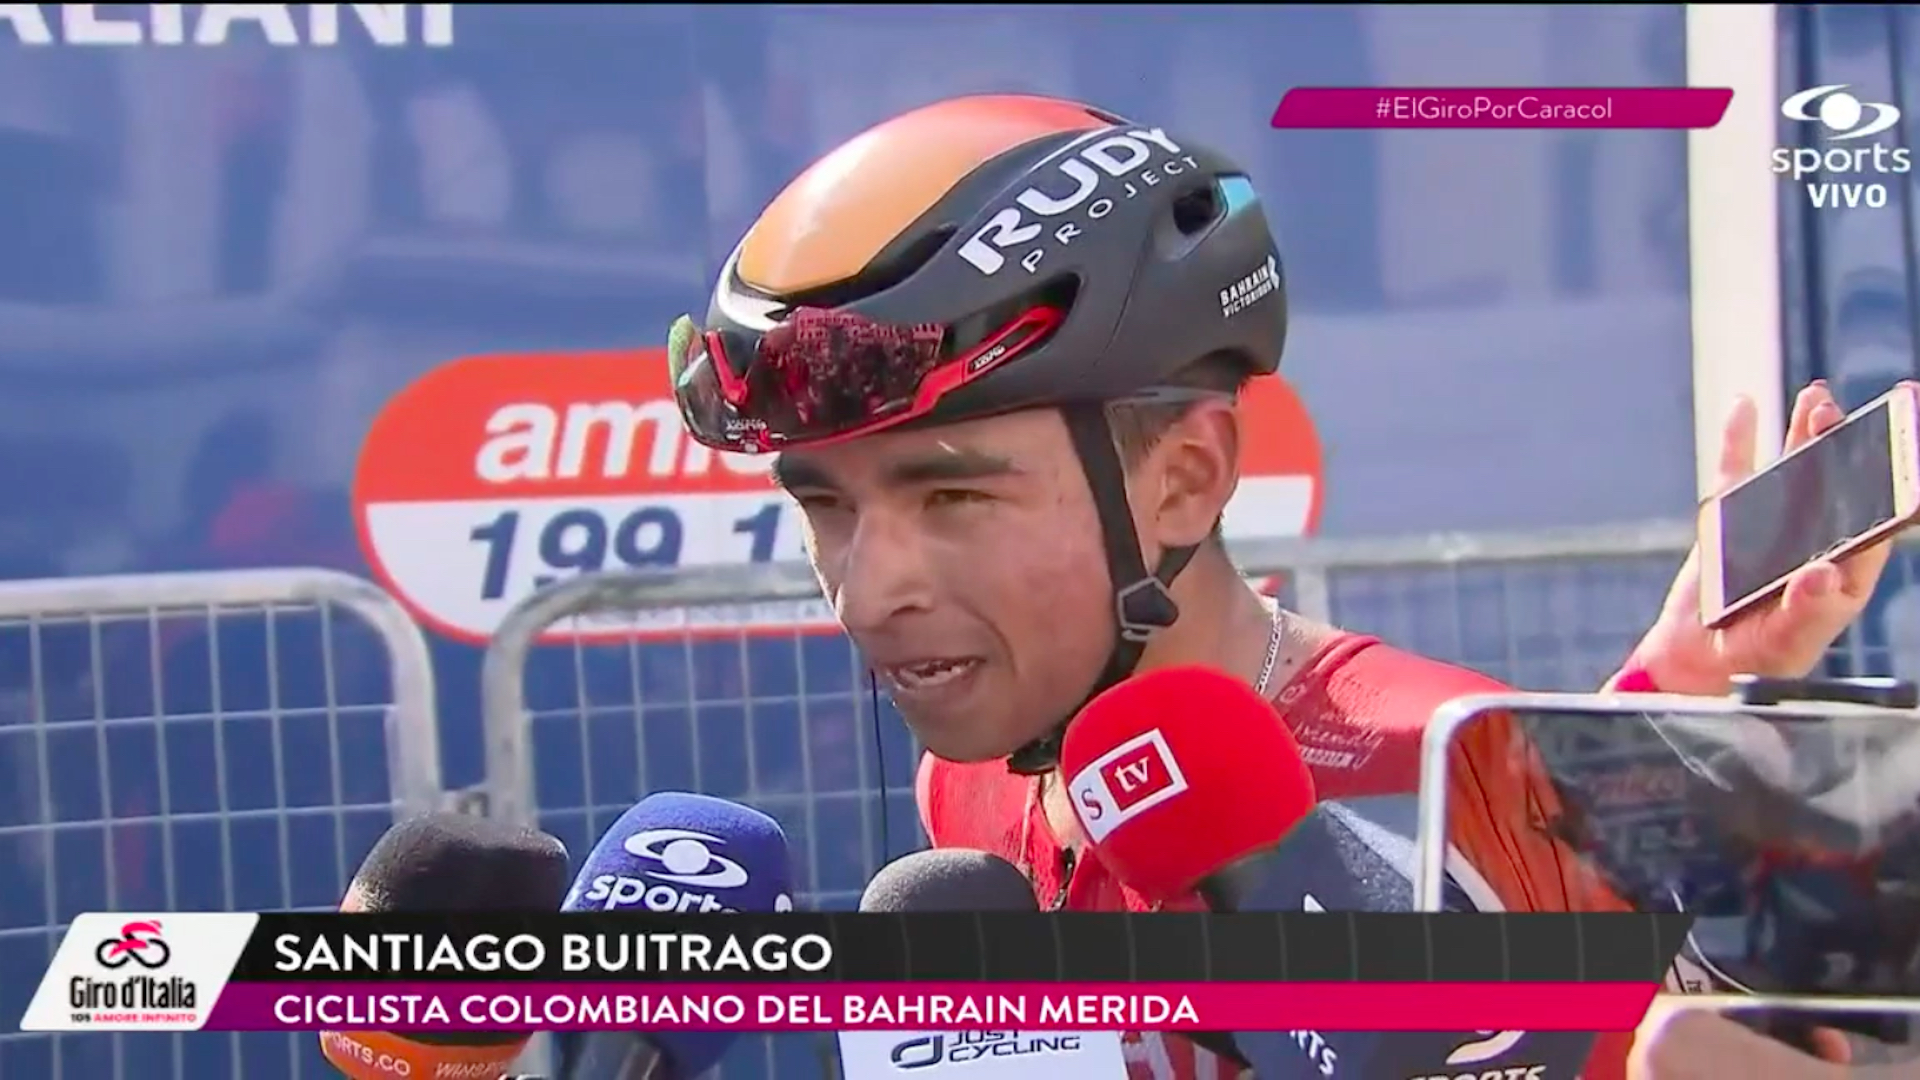 Santiago Buitrago agradeció el quinto lugar en la etapa 12 del giro; “Me dolían las piernas, pero no me dejé